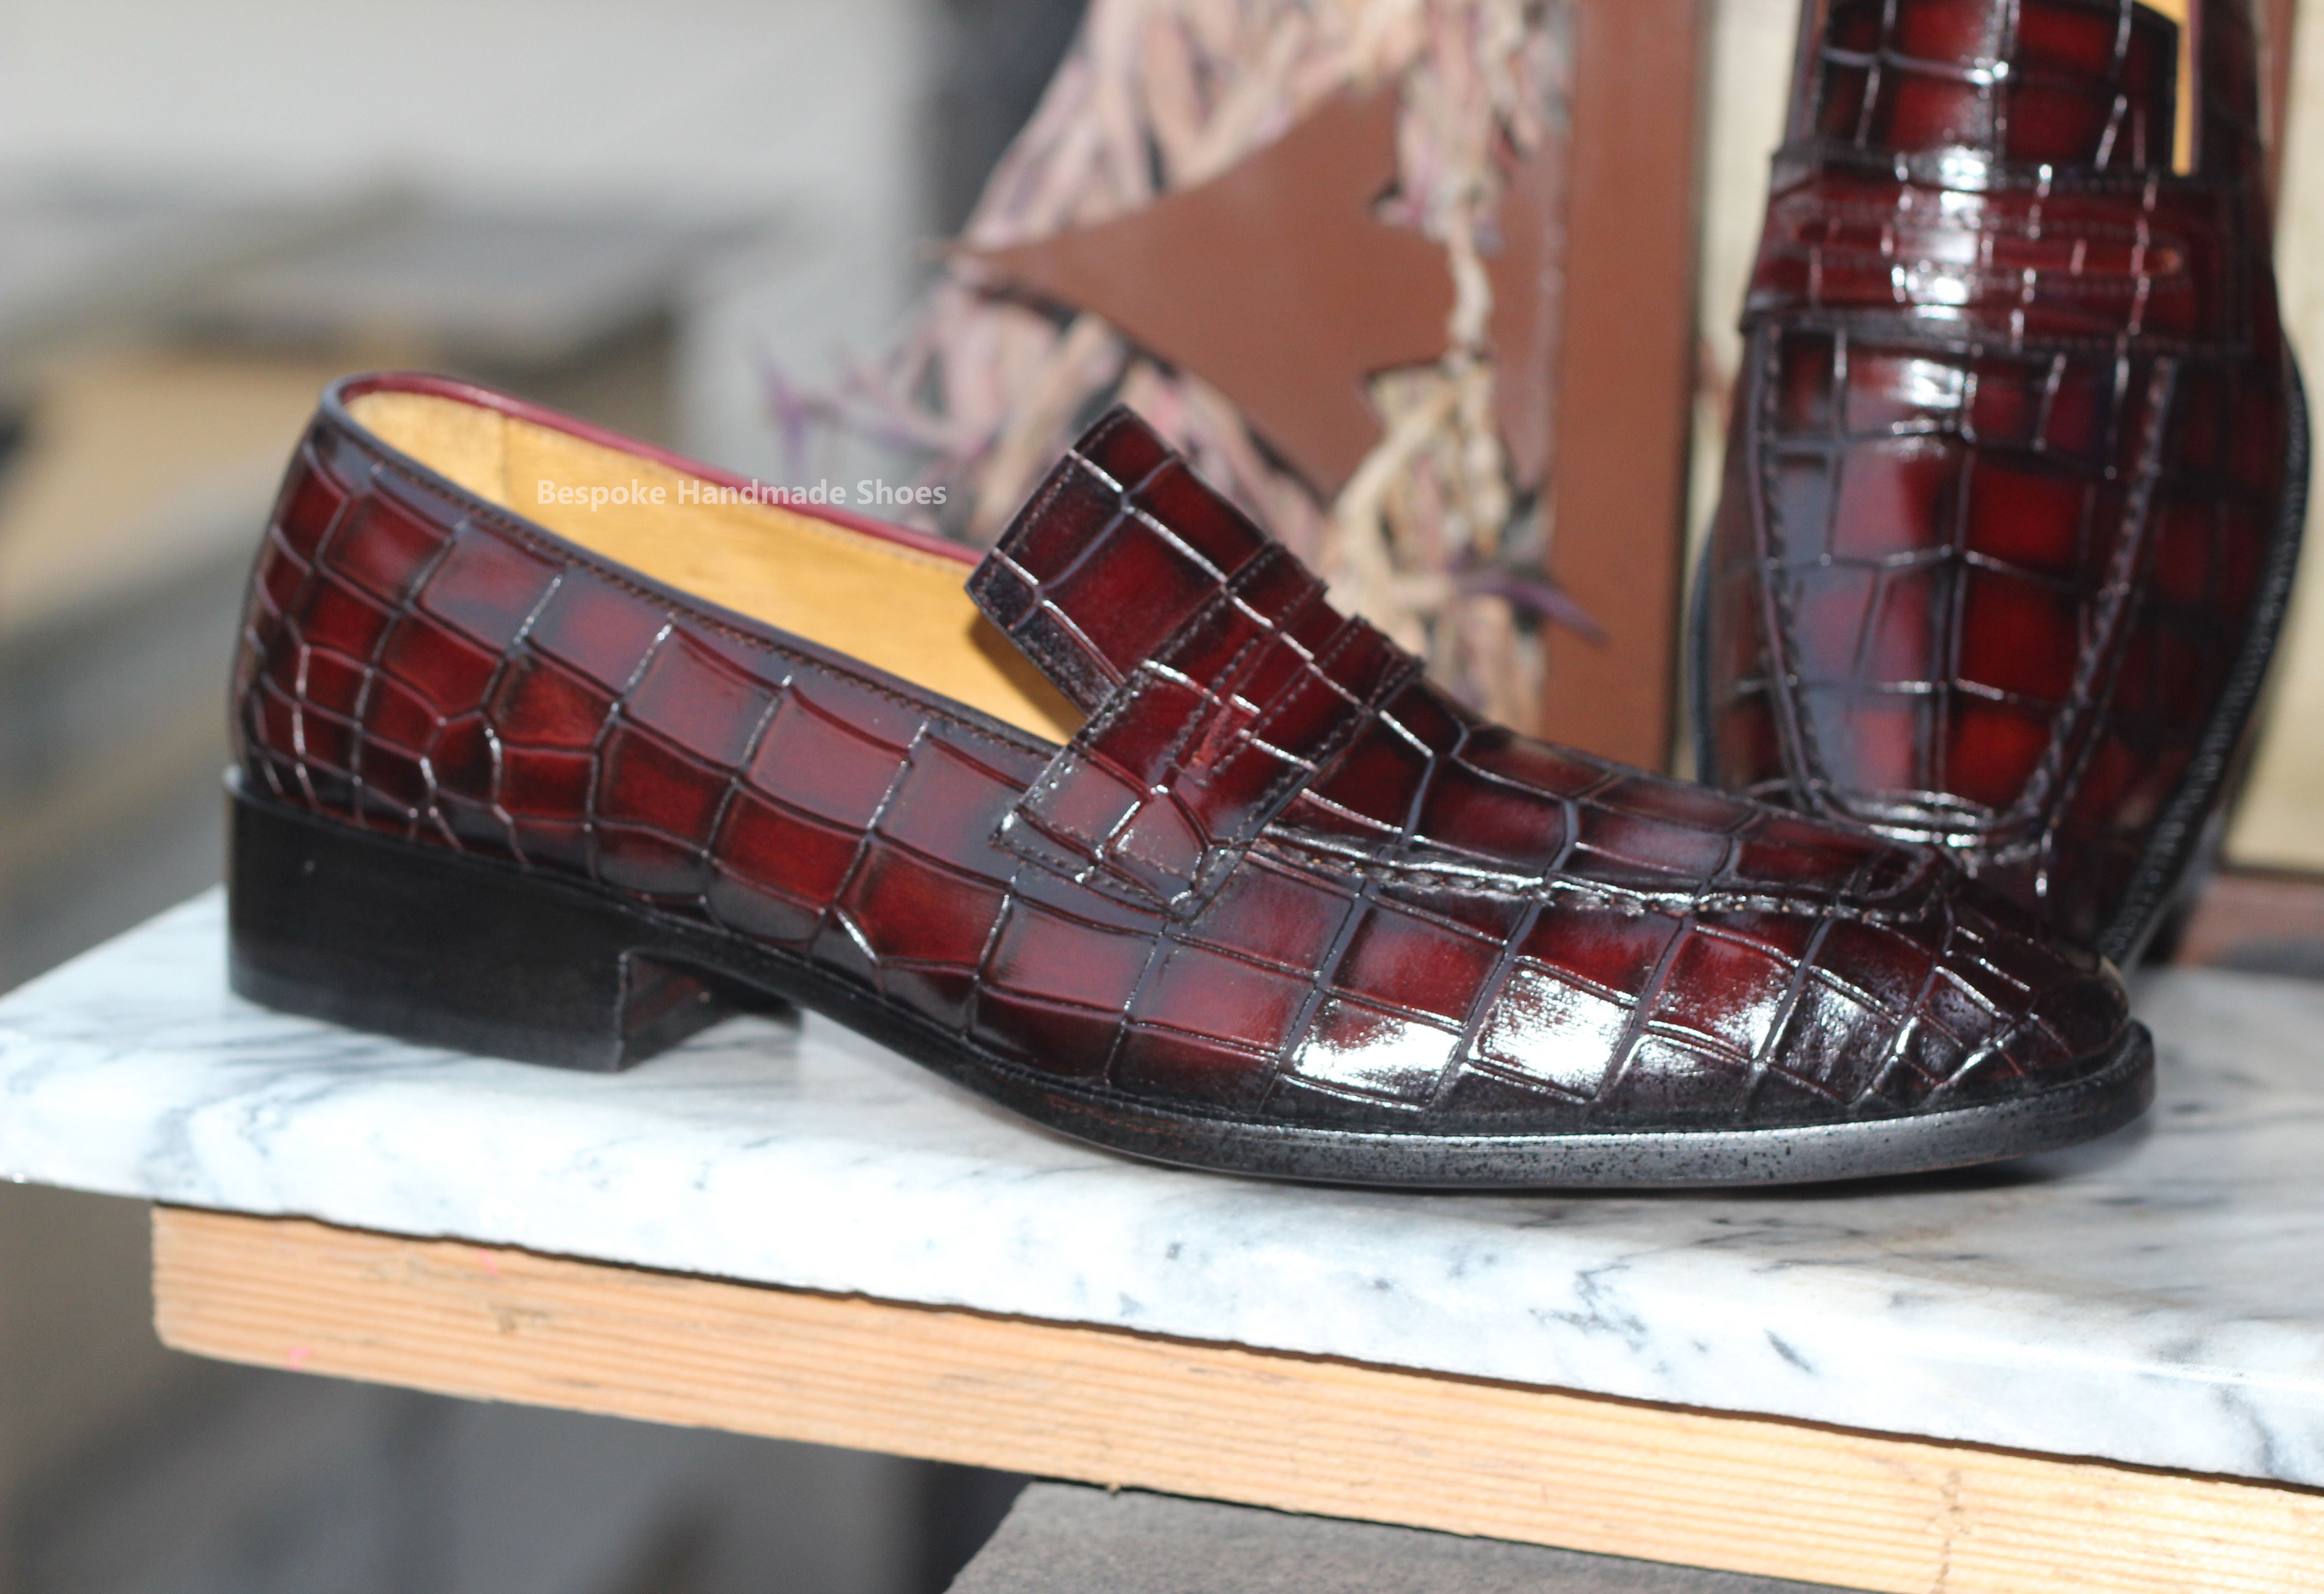 Bespoke Handmade Men's Burgundy Leather Black Shaded Slip On Loafer Casual Shoes Men